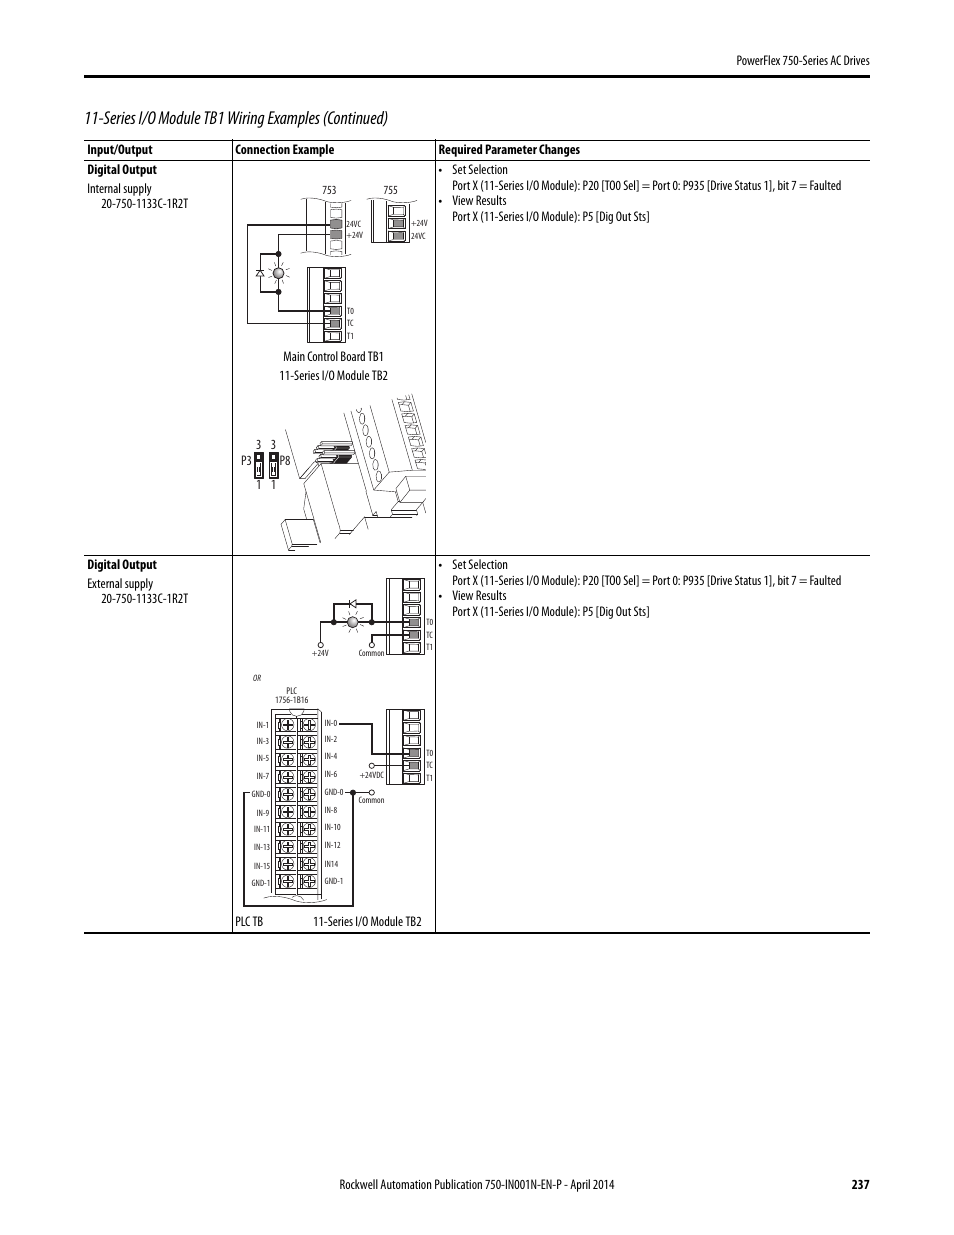 Allen Bradley Vfd Powerflex 753 Wiring Diagram - Wiring Diagram